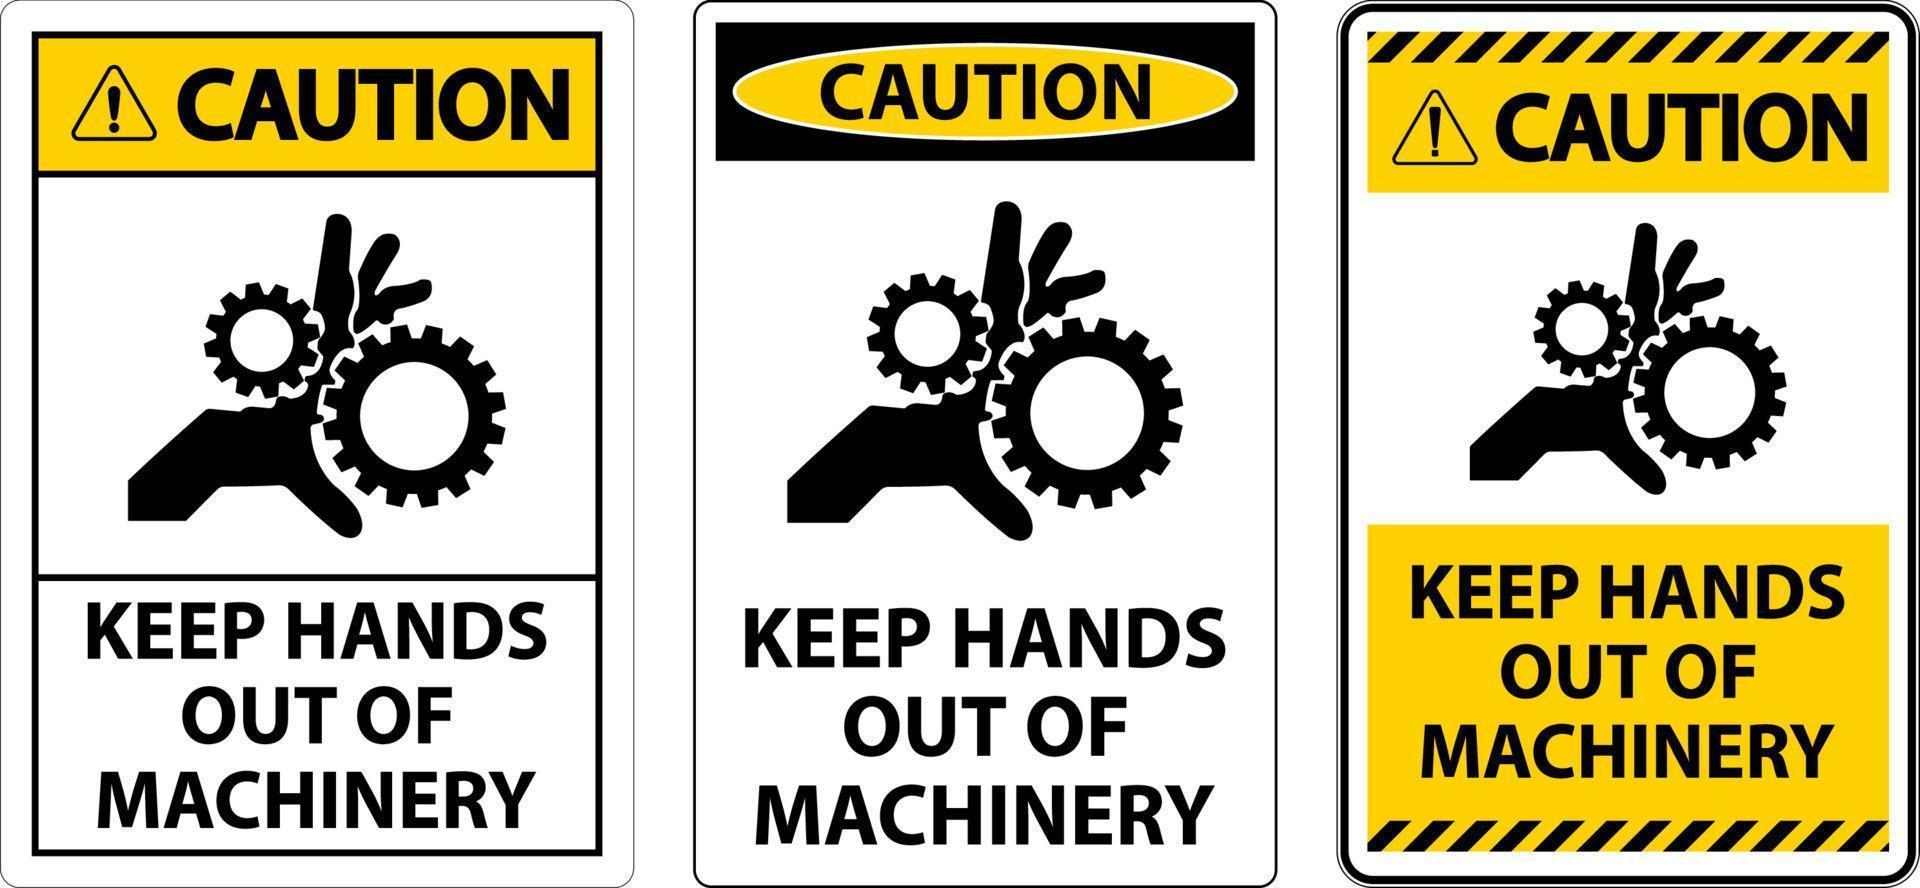 attenzione cartello mantenere mani su di macchinari vettore